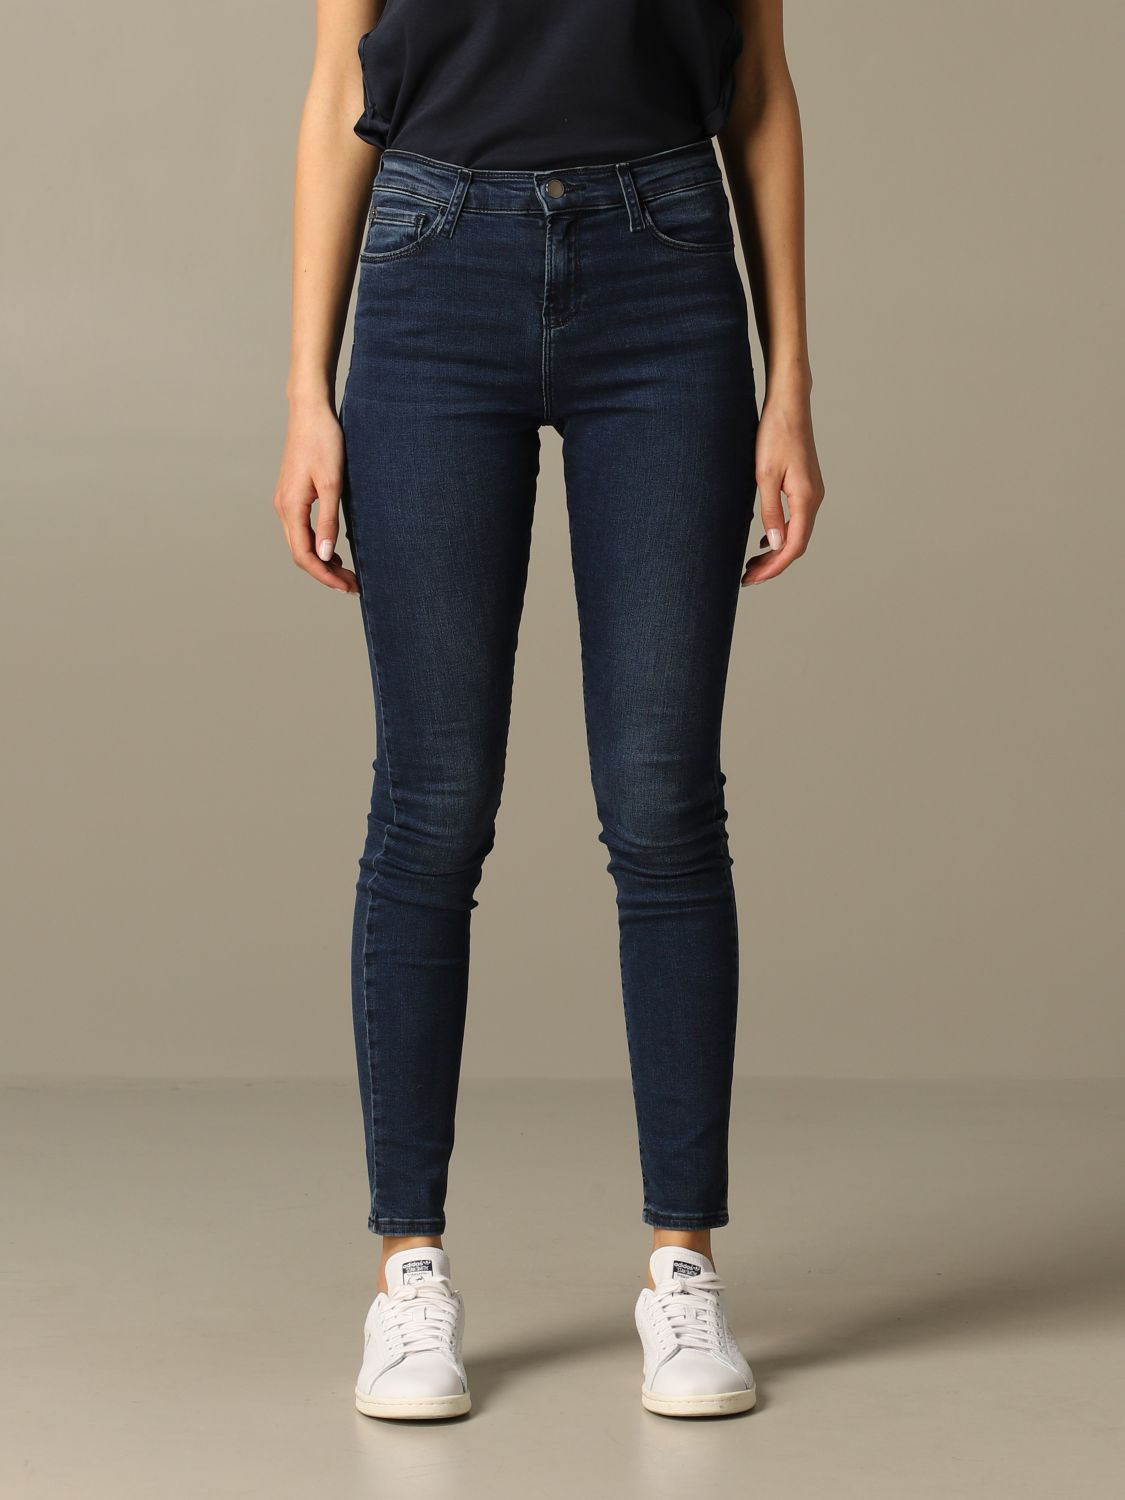 emporio armani womens jeans